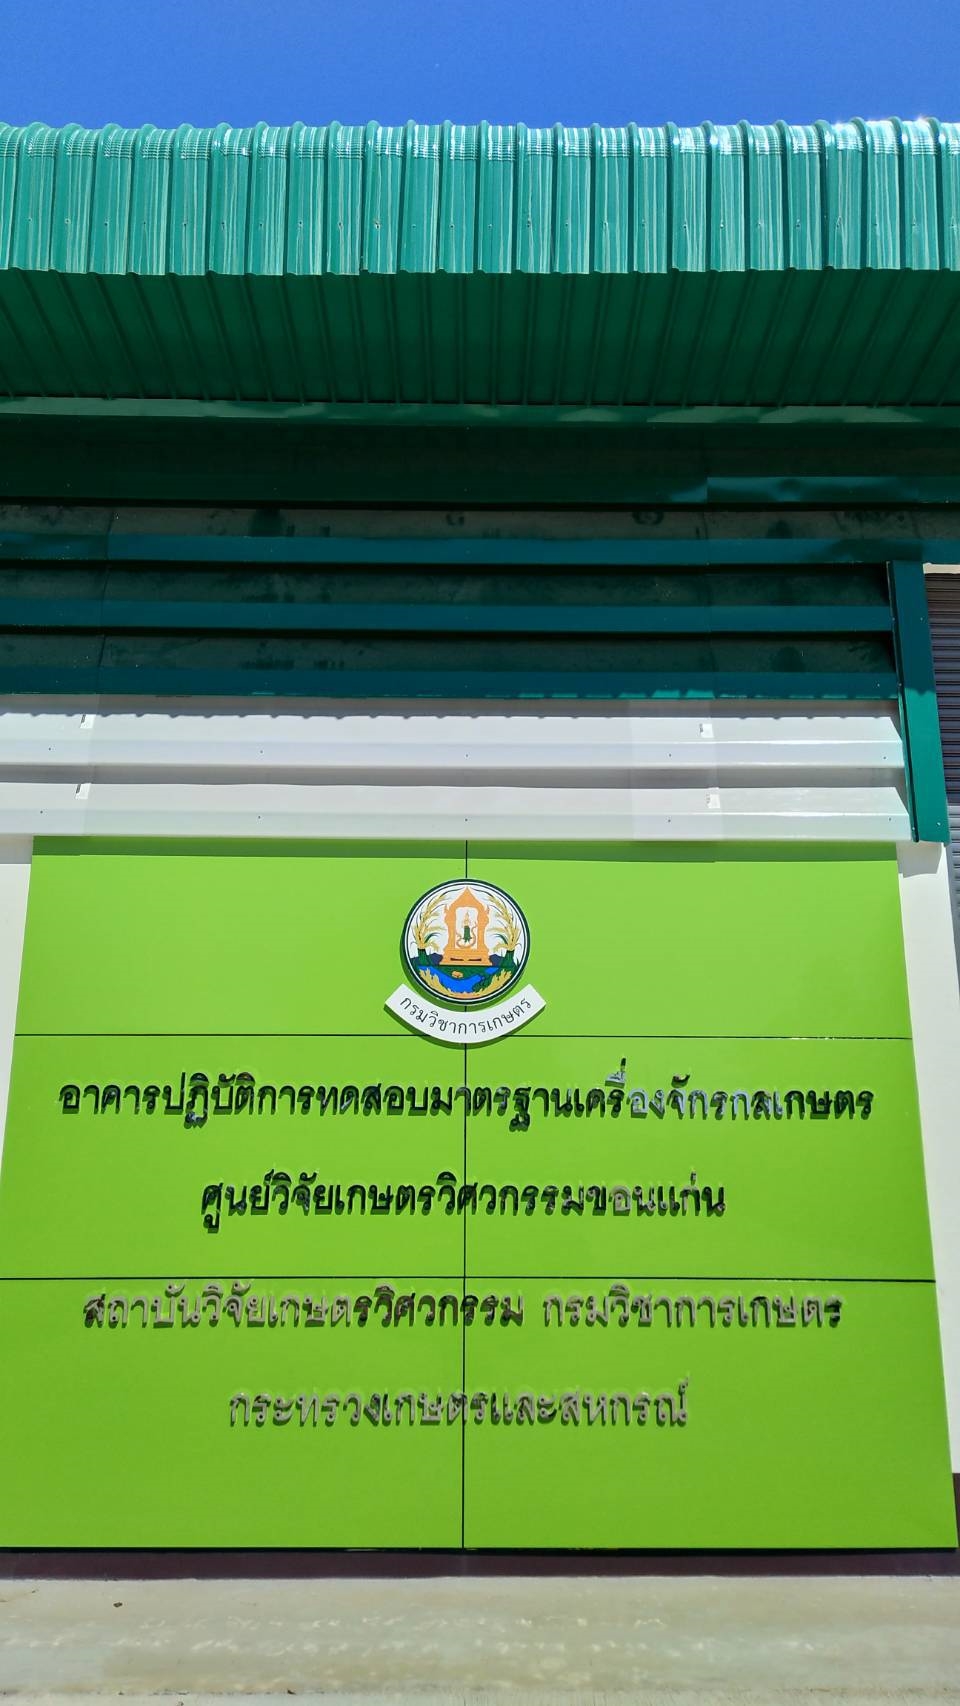 เปิดตัวห้องทดสอบเครื่องเกี่ยวนวดข้าวมาตรฐาน มอก. แห่งแรกของไทย